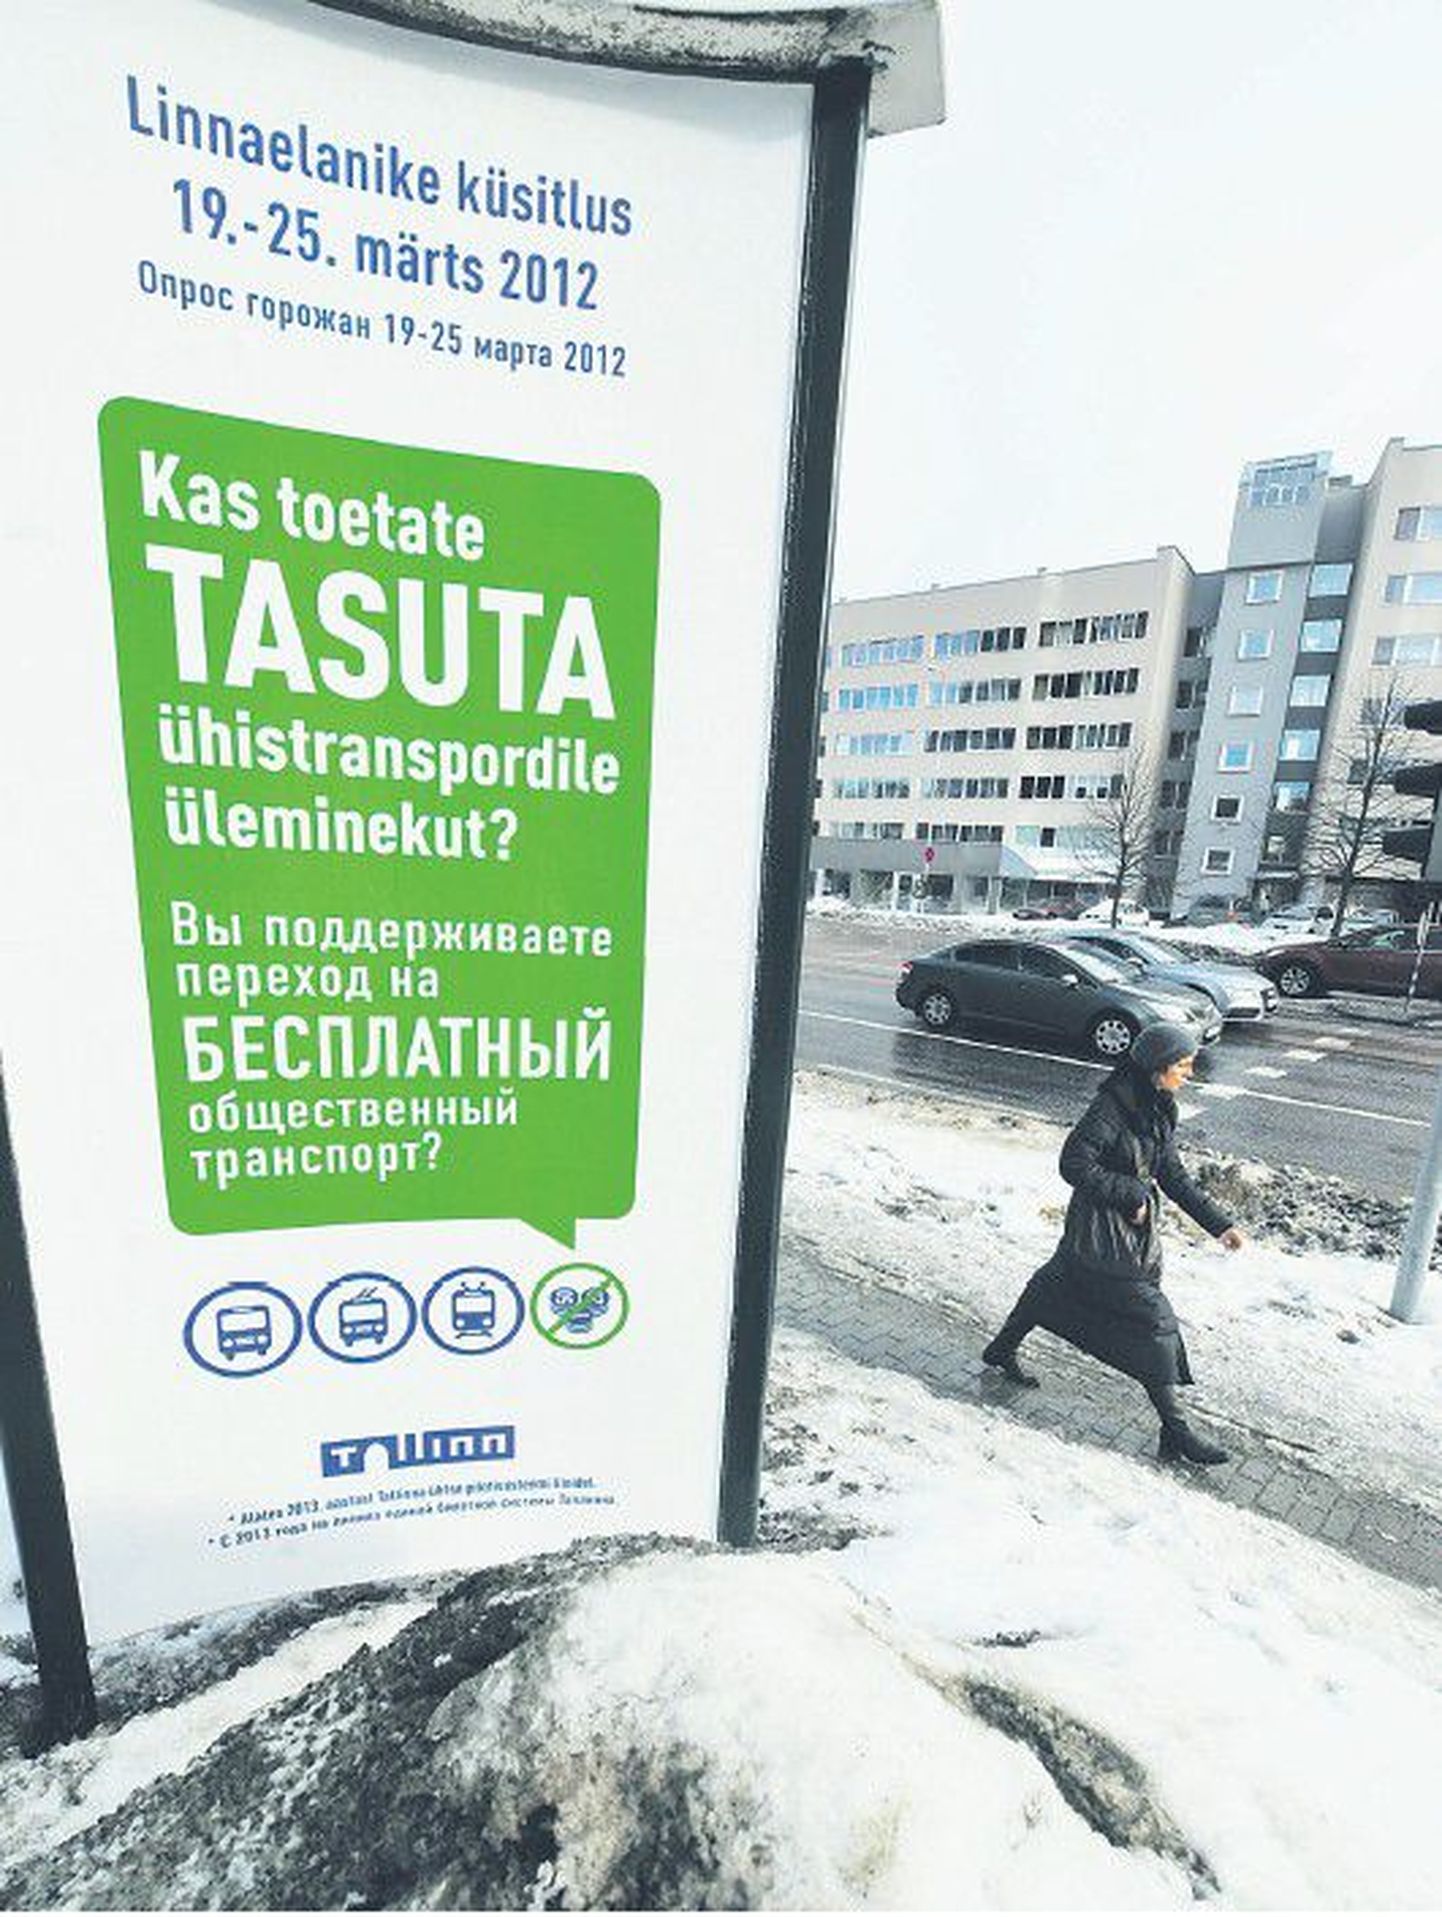 Плакат, призывающий горожан участвовать в опросе на тему введения бесплатного общест­венного транспорта, расположен на улице Лийвалайа в Таллинне.